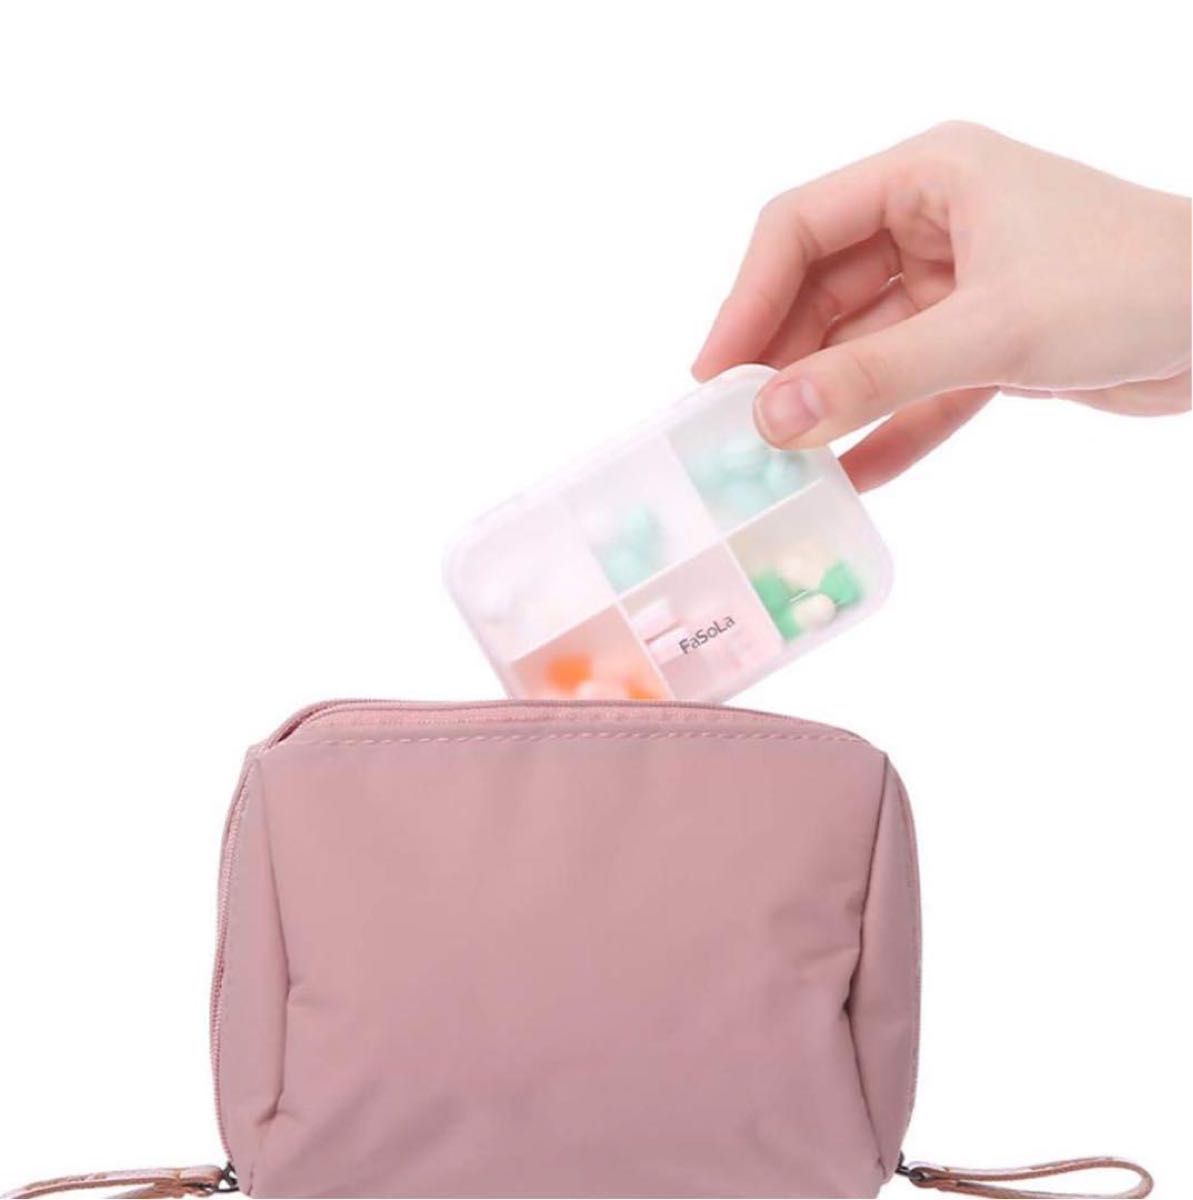 ピルケース 薬ケース 薬入れ サプリメントケース 錠剤 ケース 携帯用 旅行 常備薬 飲み忘れ防止 薄型 密閉 耐湿 薬箱 薬